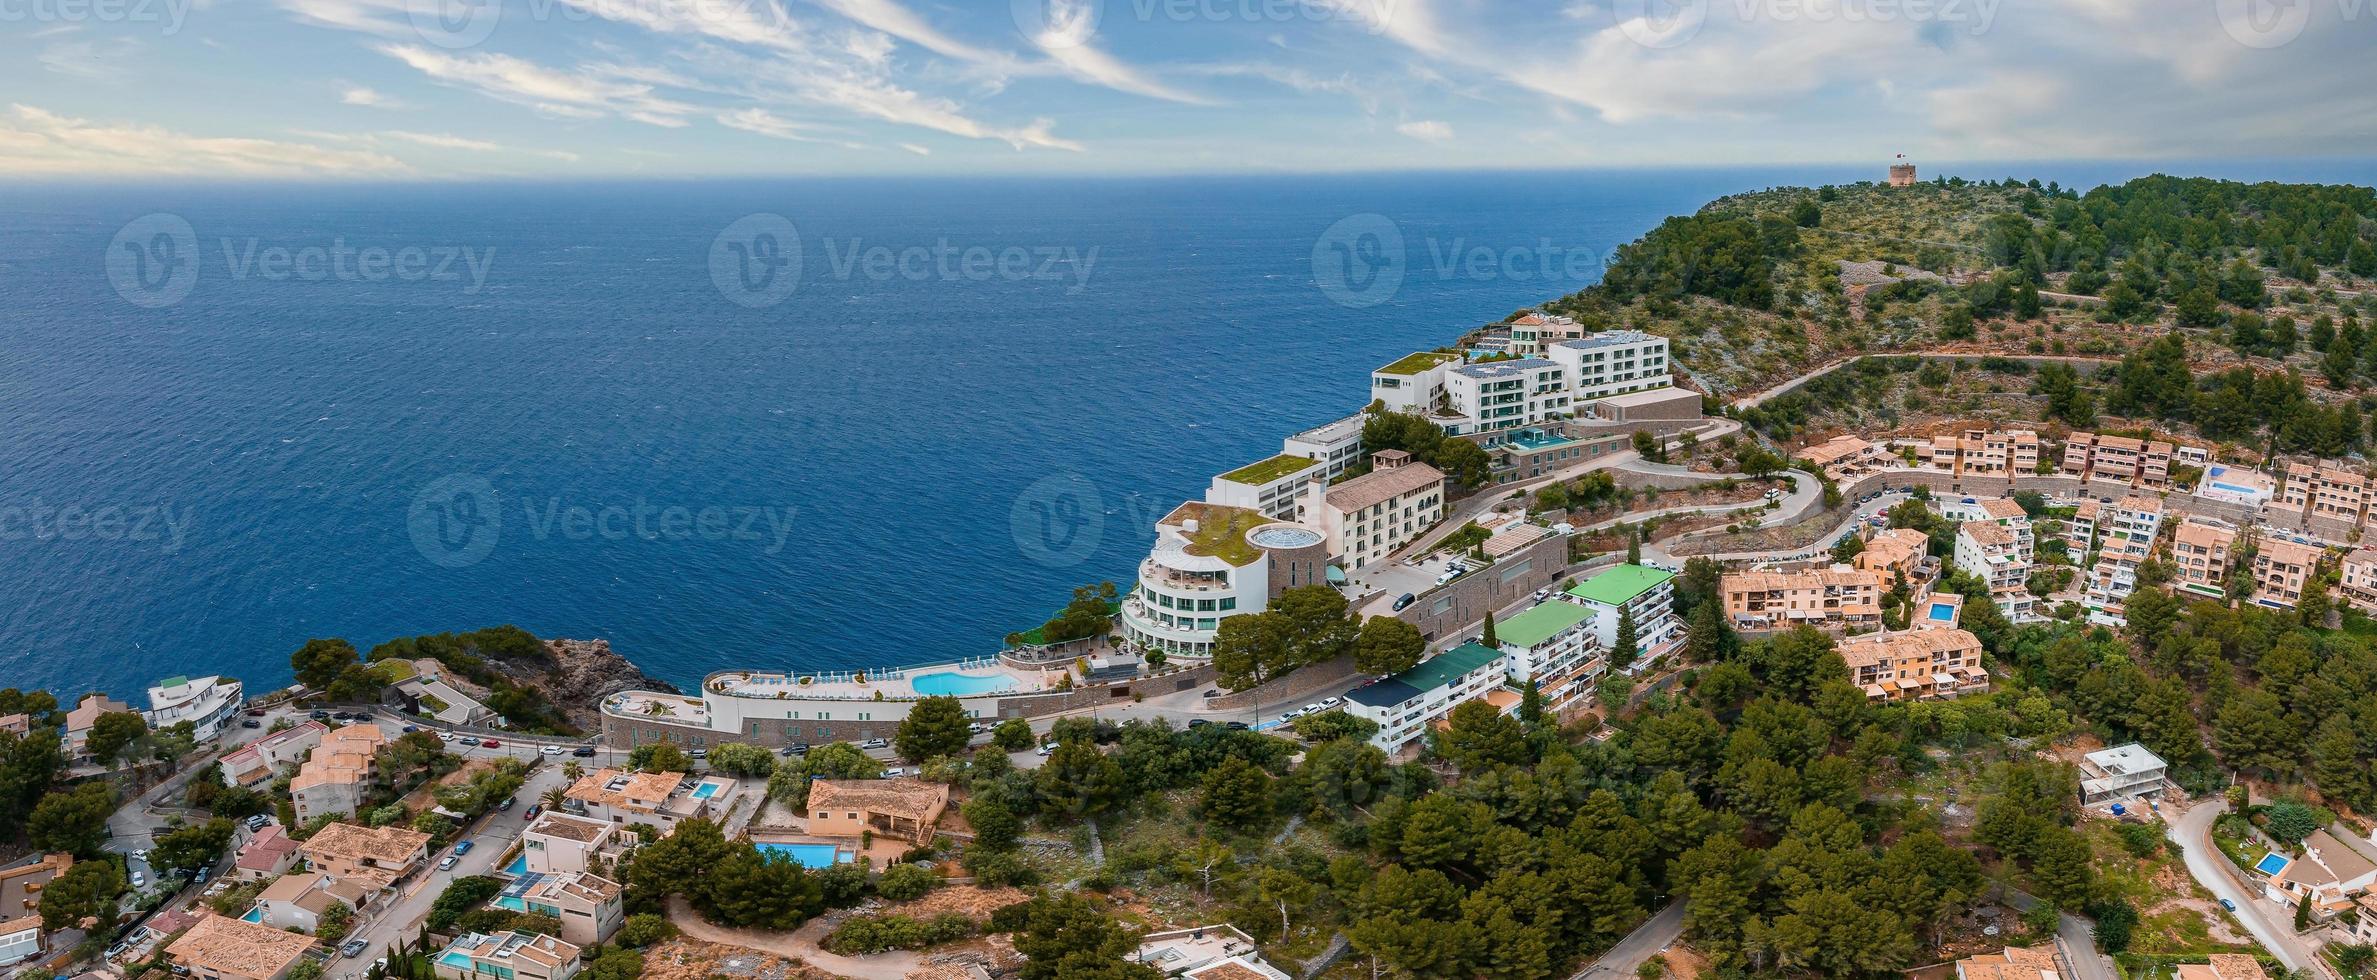 veduta aerea del lussuoso hotel cliff house in cima alla scogliera sull'isola di maiorca. foto